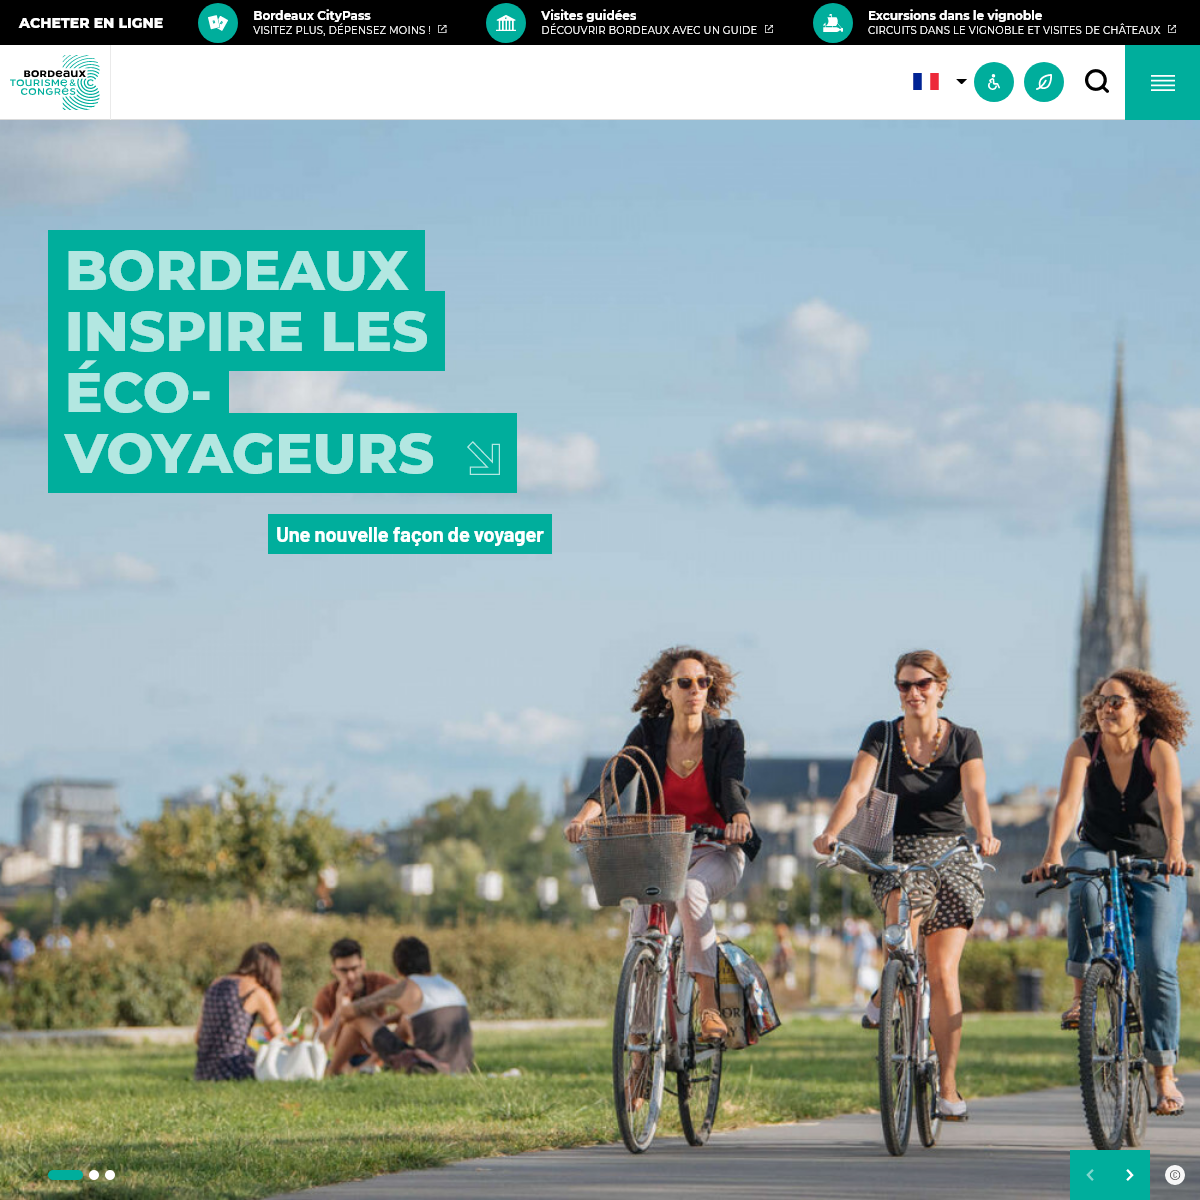 A complete backup of bordeaux-tourisme.com